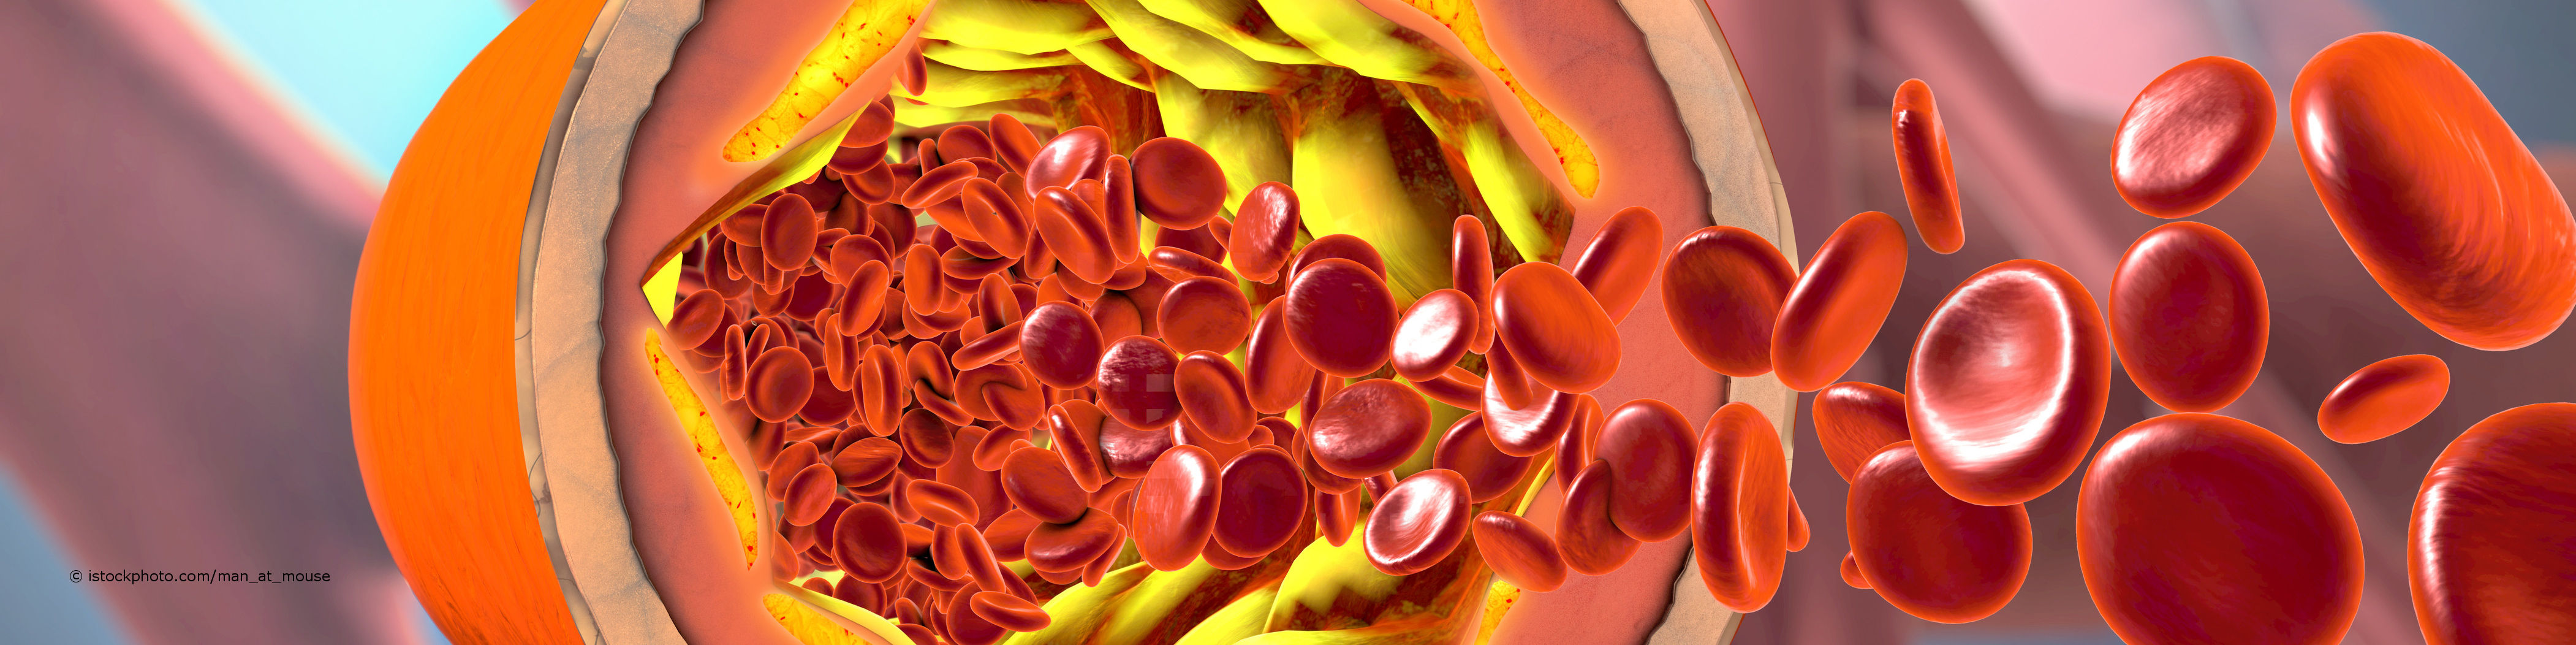 Blutplättchen versuchen ein durch Fetteinlagerung entzündetes Blutgefäß zu reparieren